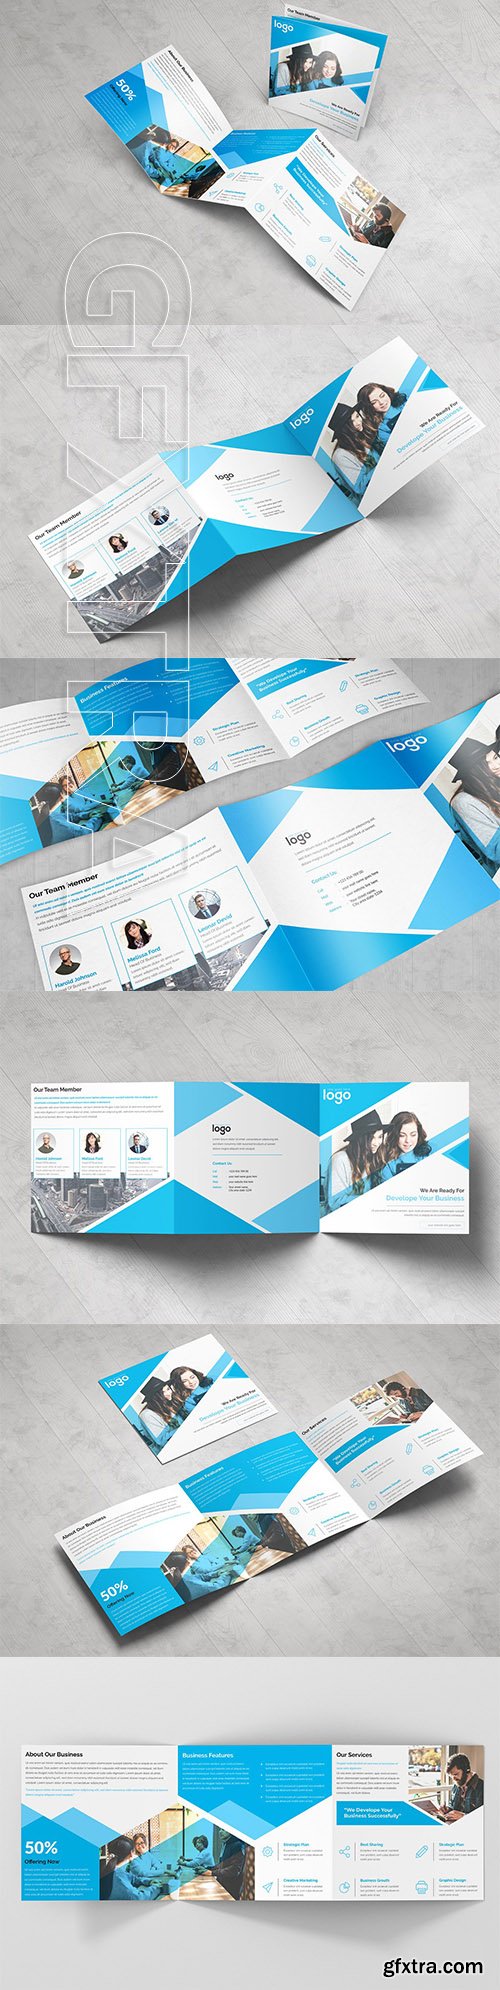 CreativeMarket - Corporate Square Tri Fold Brochure 3378956